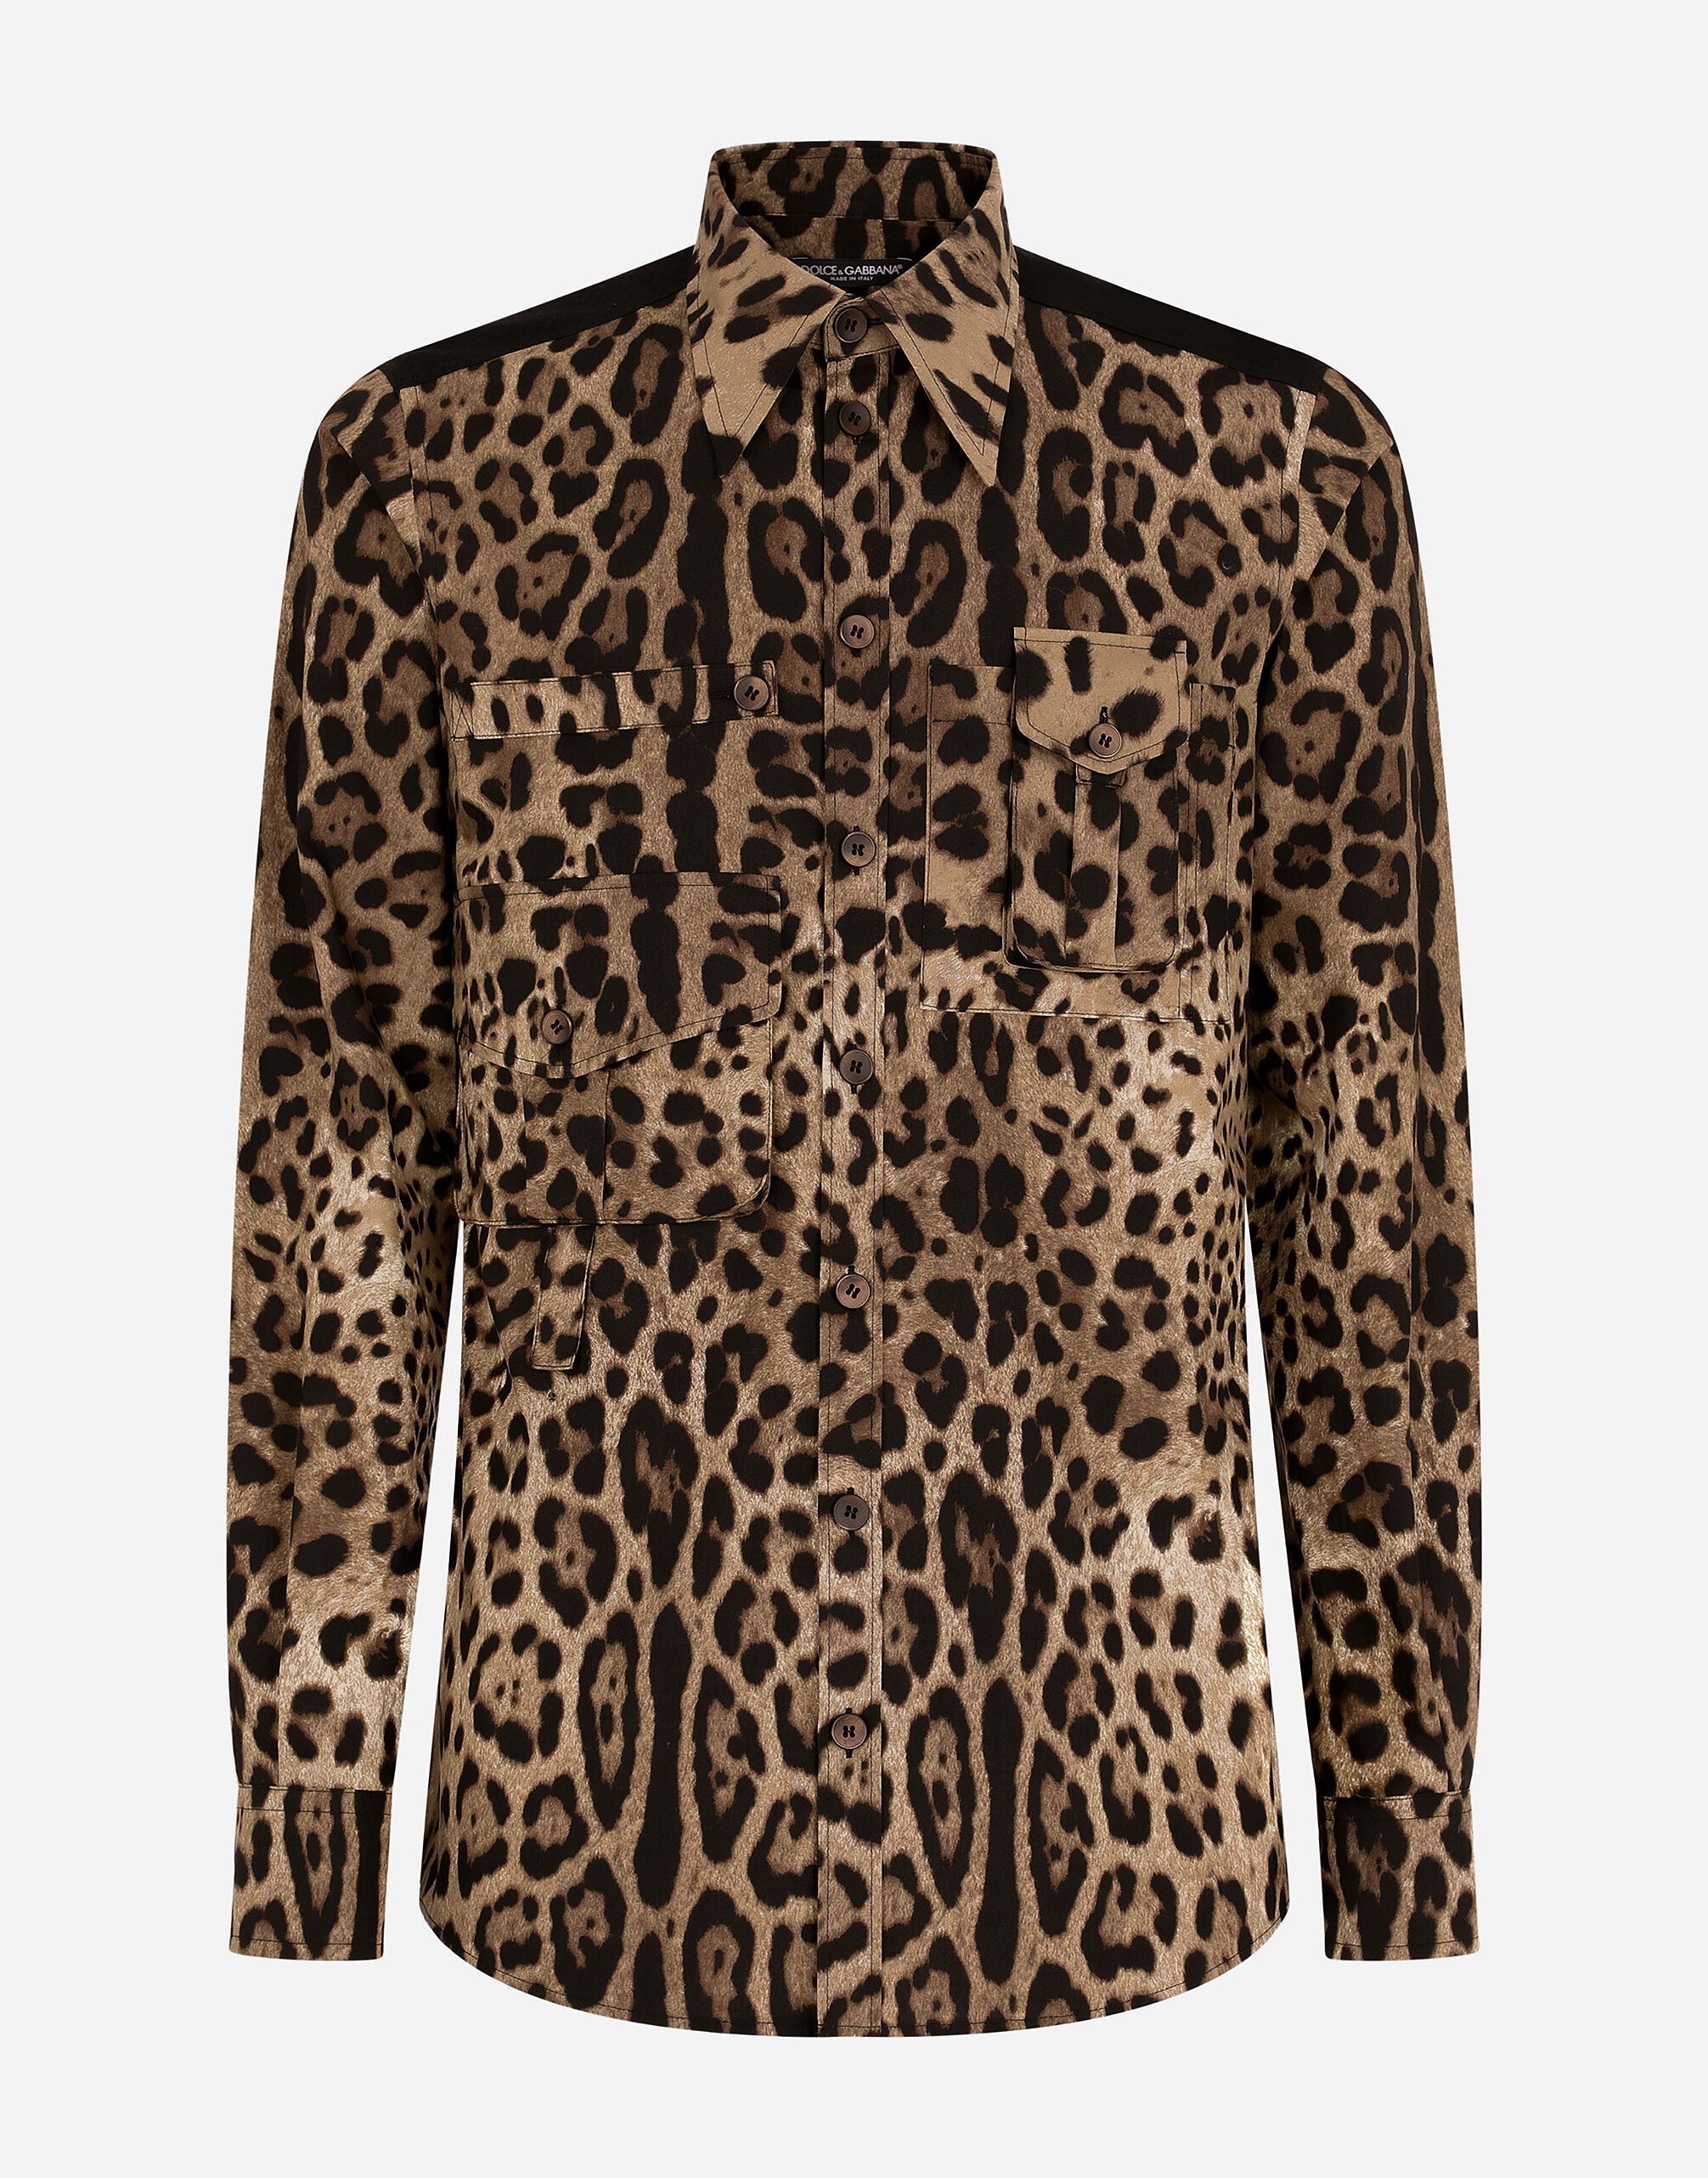 Dolce&Gabbana 멀티 포켓 레오파드 프린트 코튼 셔츠 블랙 GY6IETFUFJR